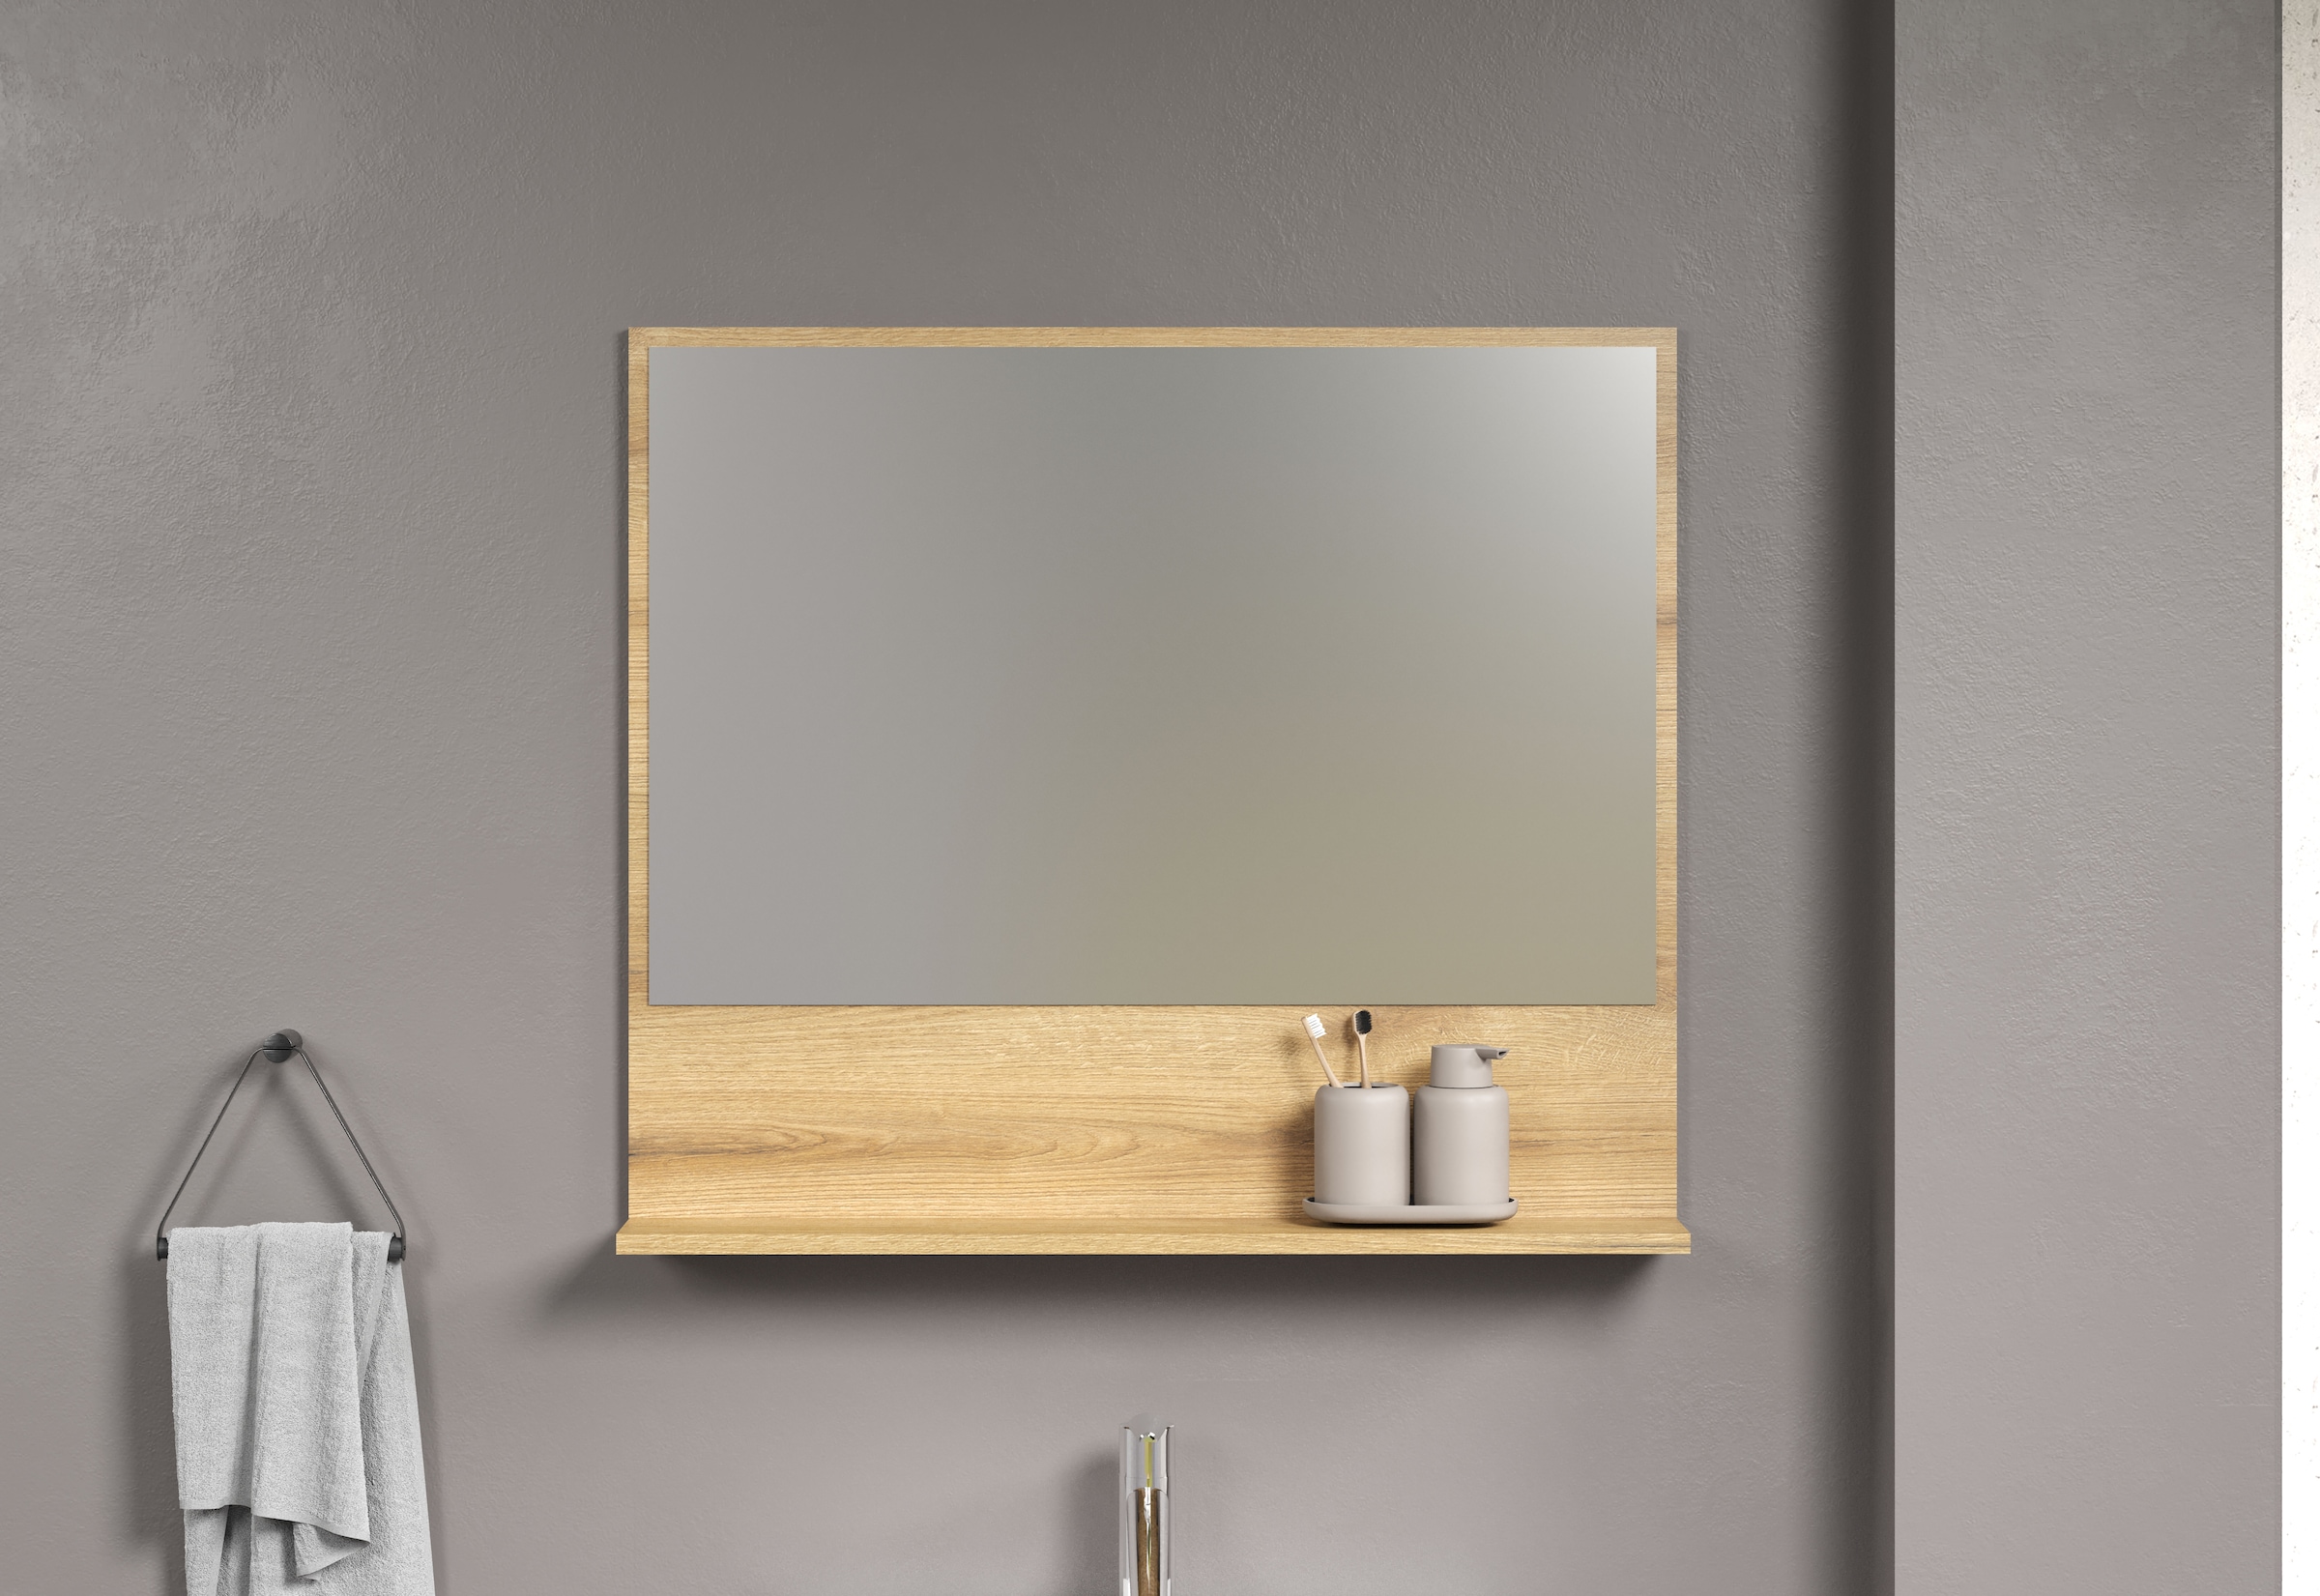 welltime Spiegel »Amrum Badezimmerspiegel Badmöbel Wandspiegel«, BxHxT 80 x 74 x 14cm eleganter Spiegel in einem zeitlosen Eiche Dekor